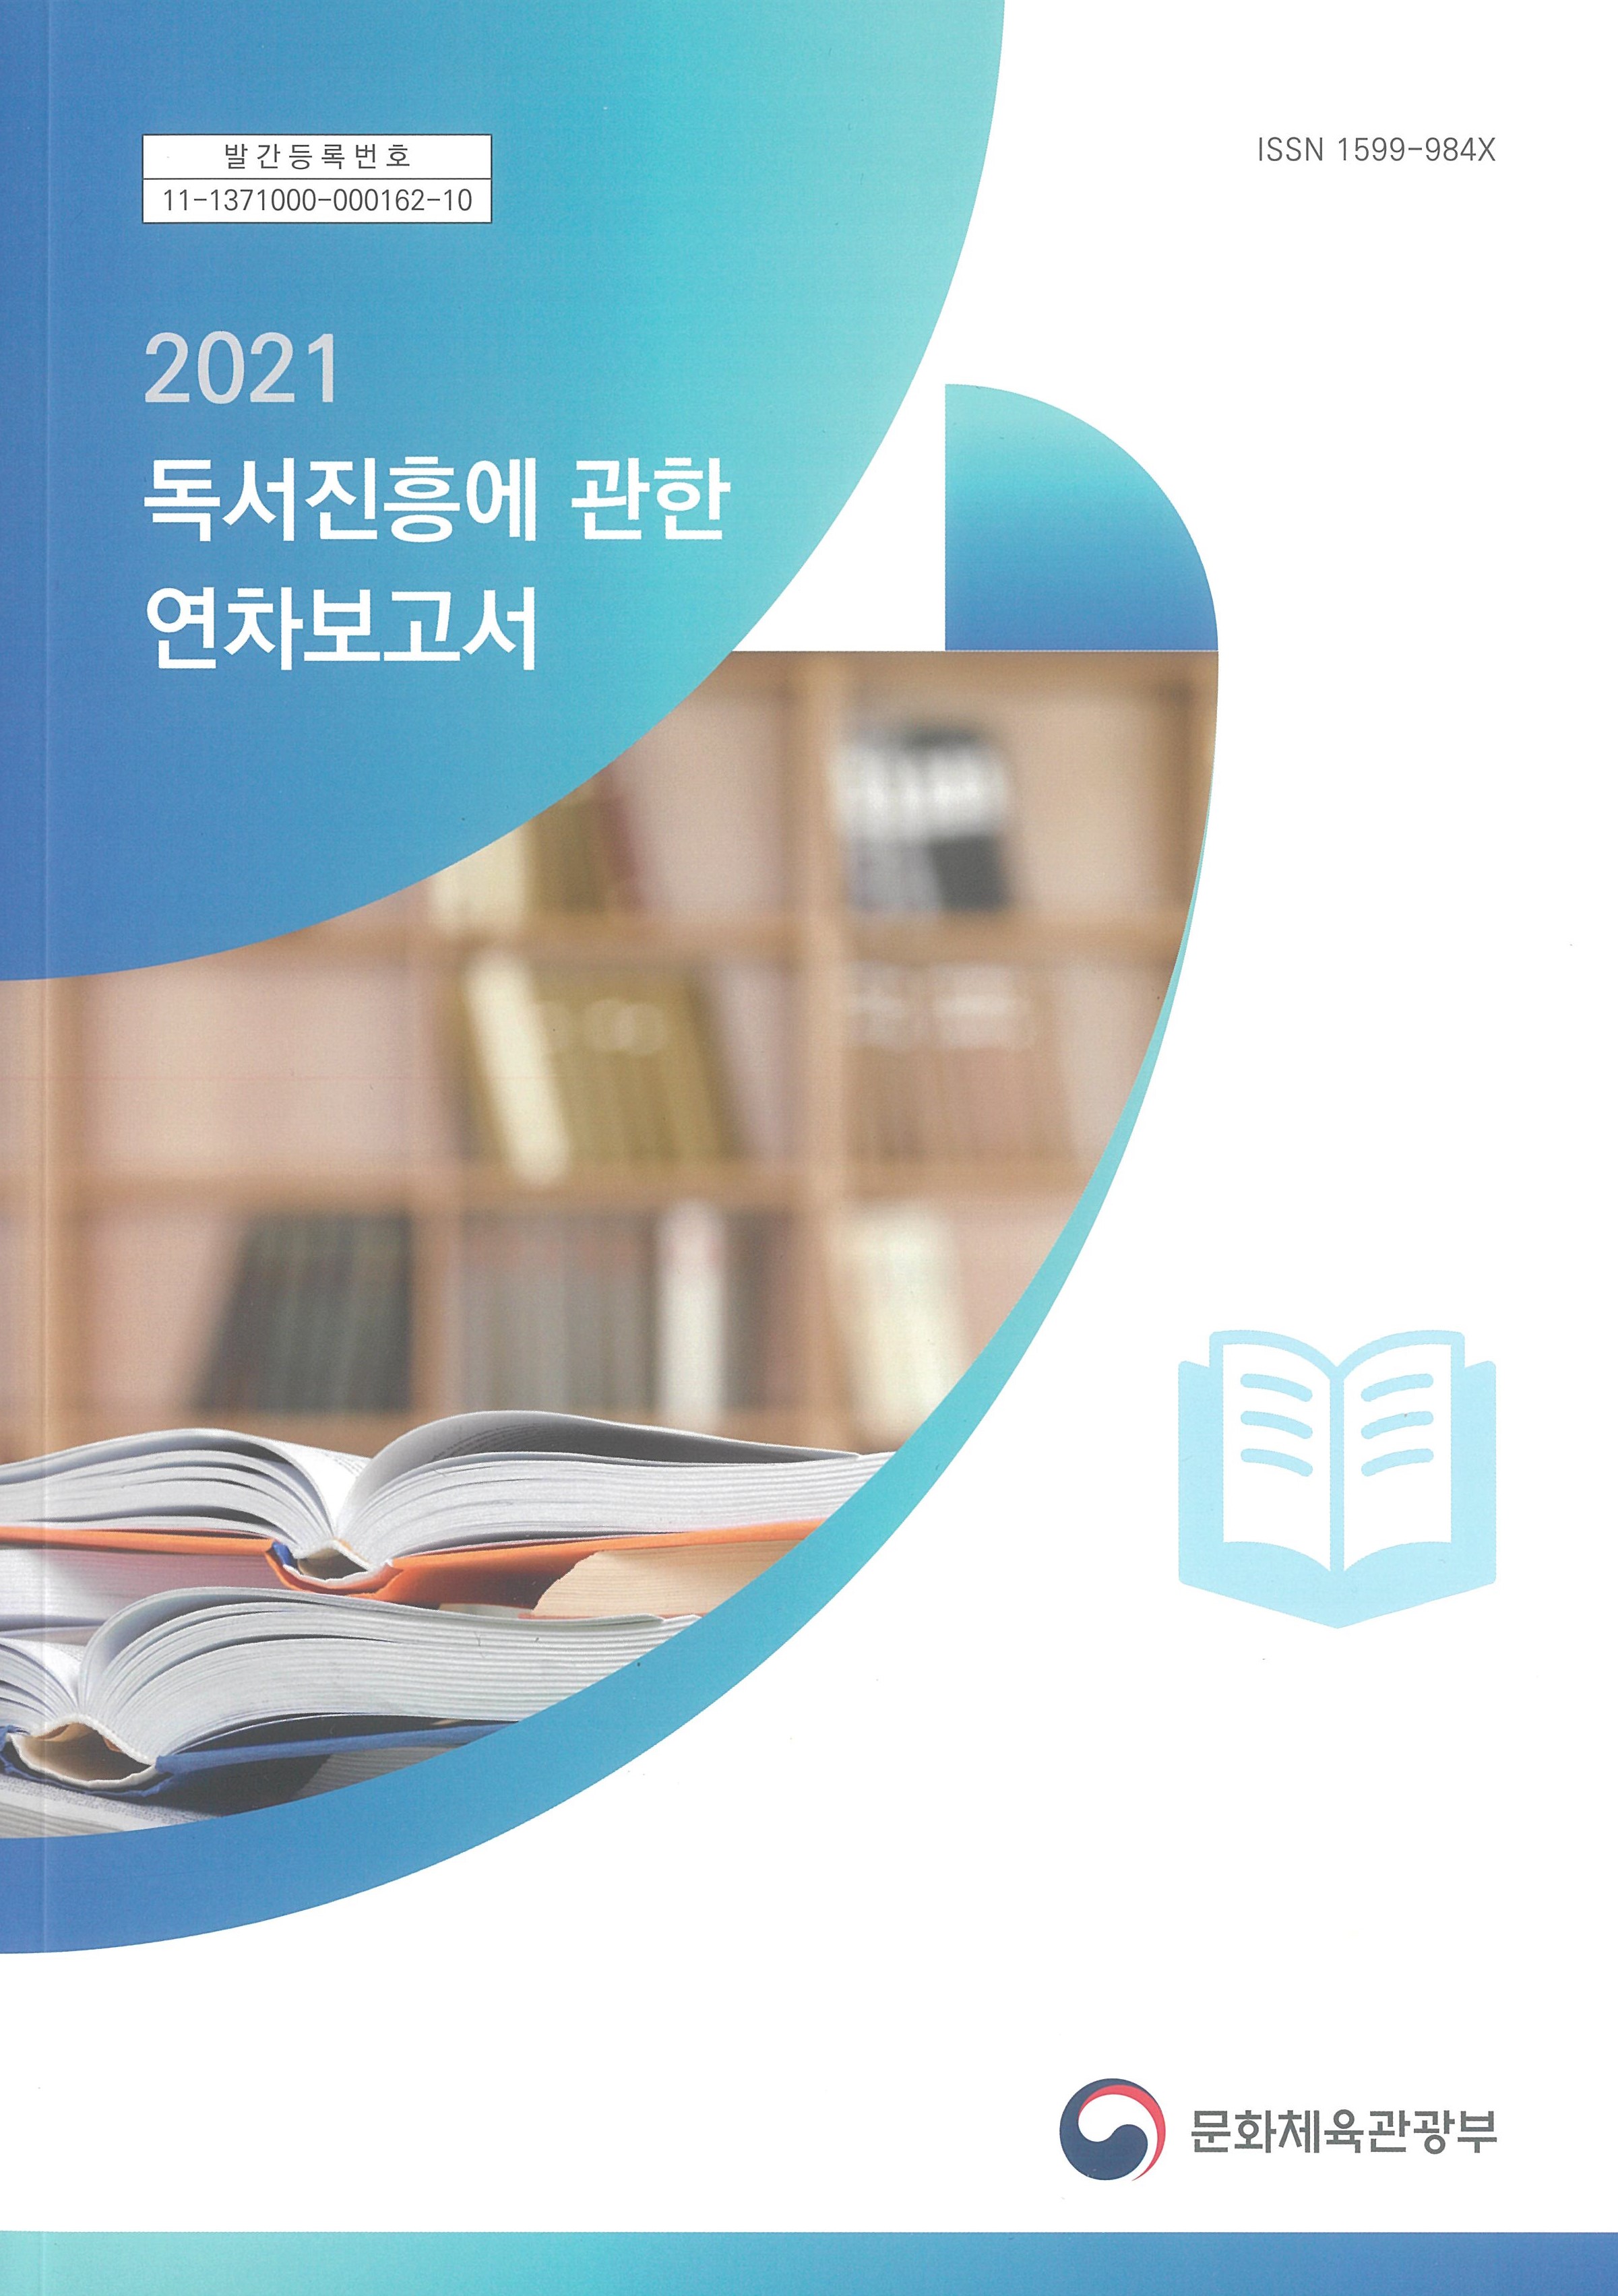 2021 독서진흥에 관한 연차보고서